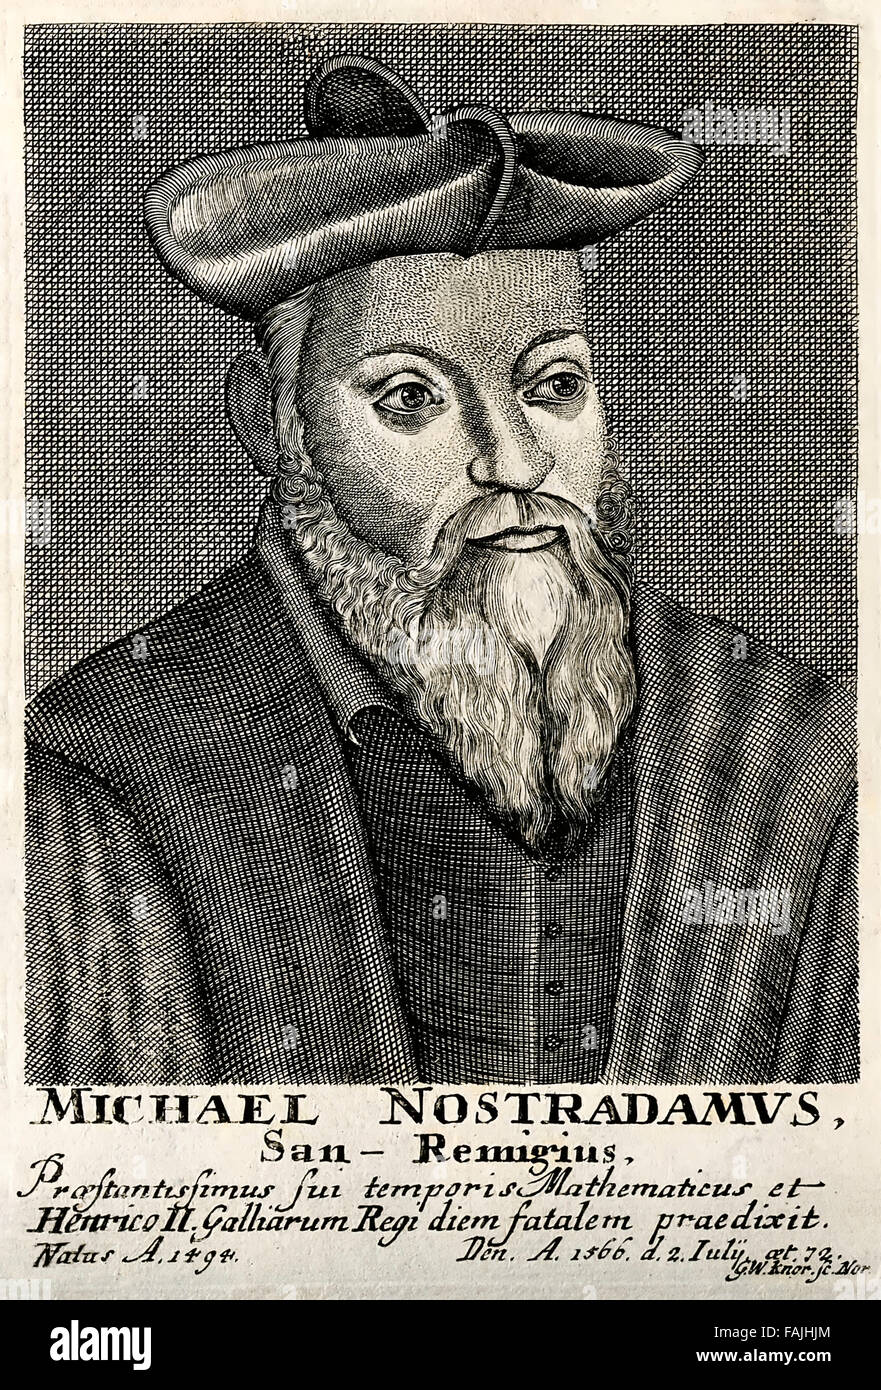 Portrait de Michel Nostradamus (1503-1566), gravure de G. W. Knorr. Voir la description pour plus d'informations. Banque D'Images